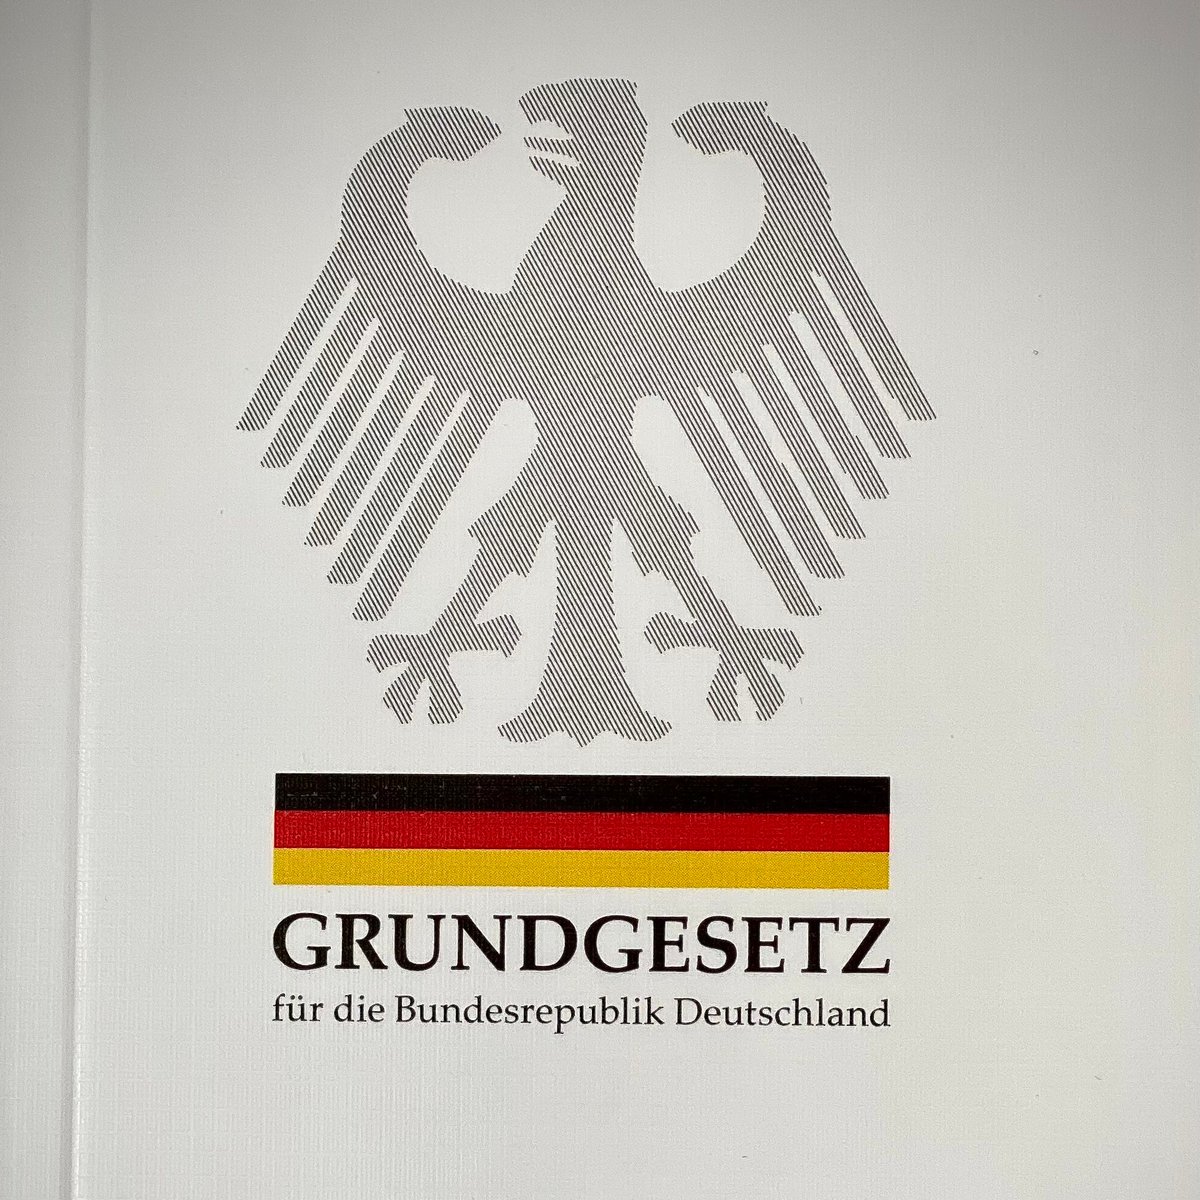 Конституция фрг. Законодательство ФРГ. Конституция Федеративной Республики Германии. Grundgesetz.